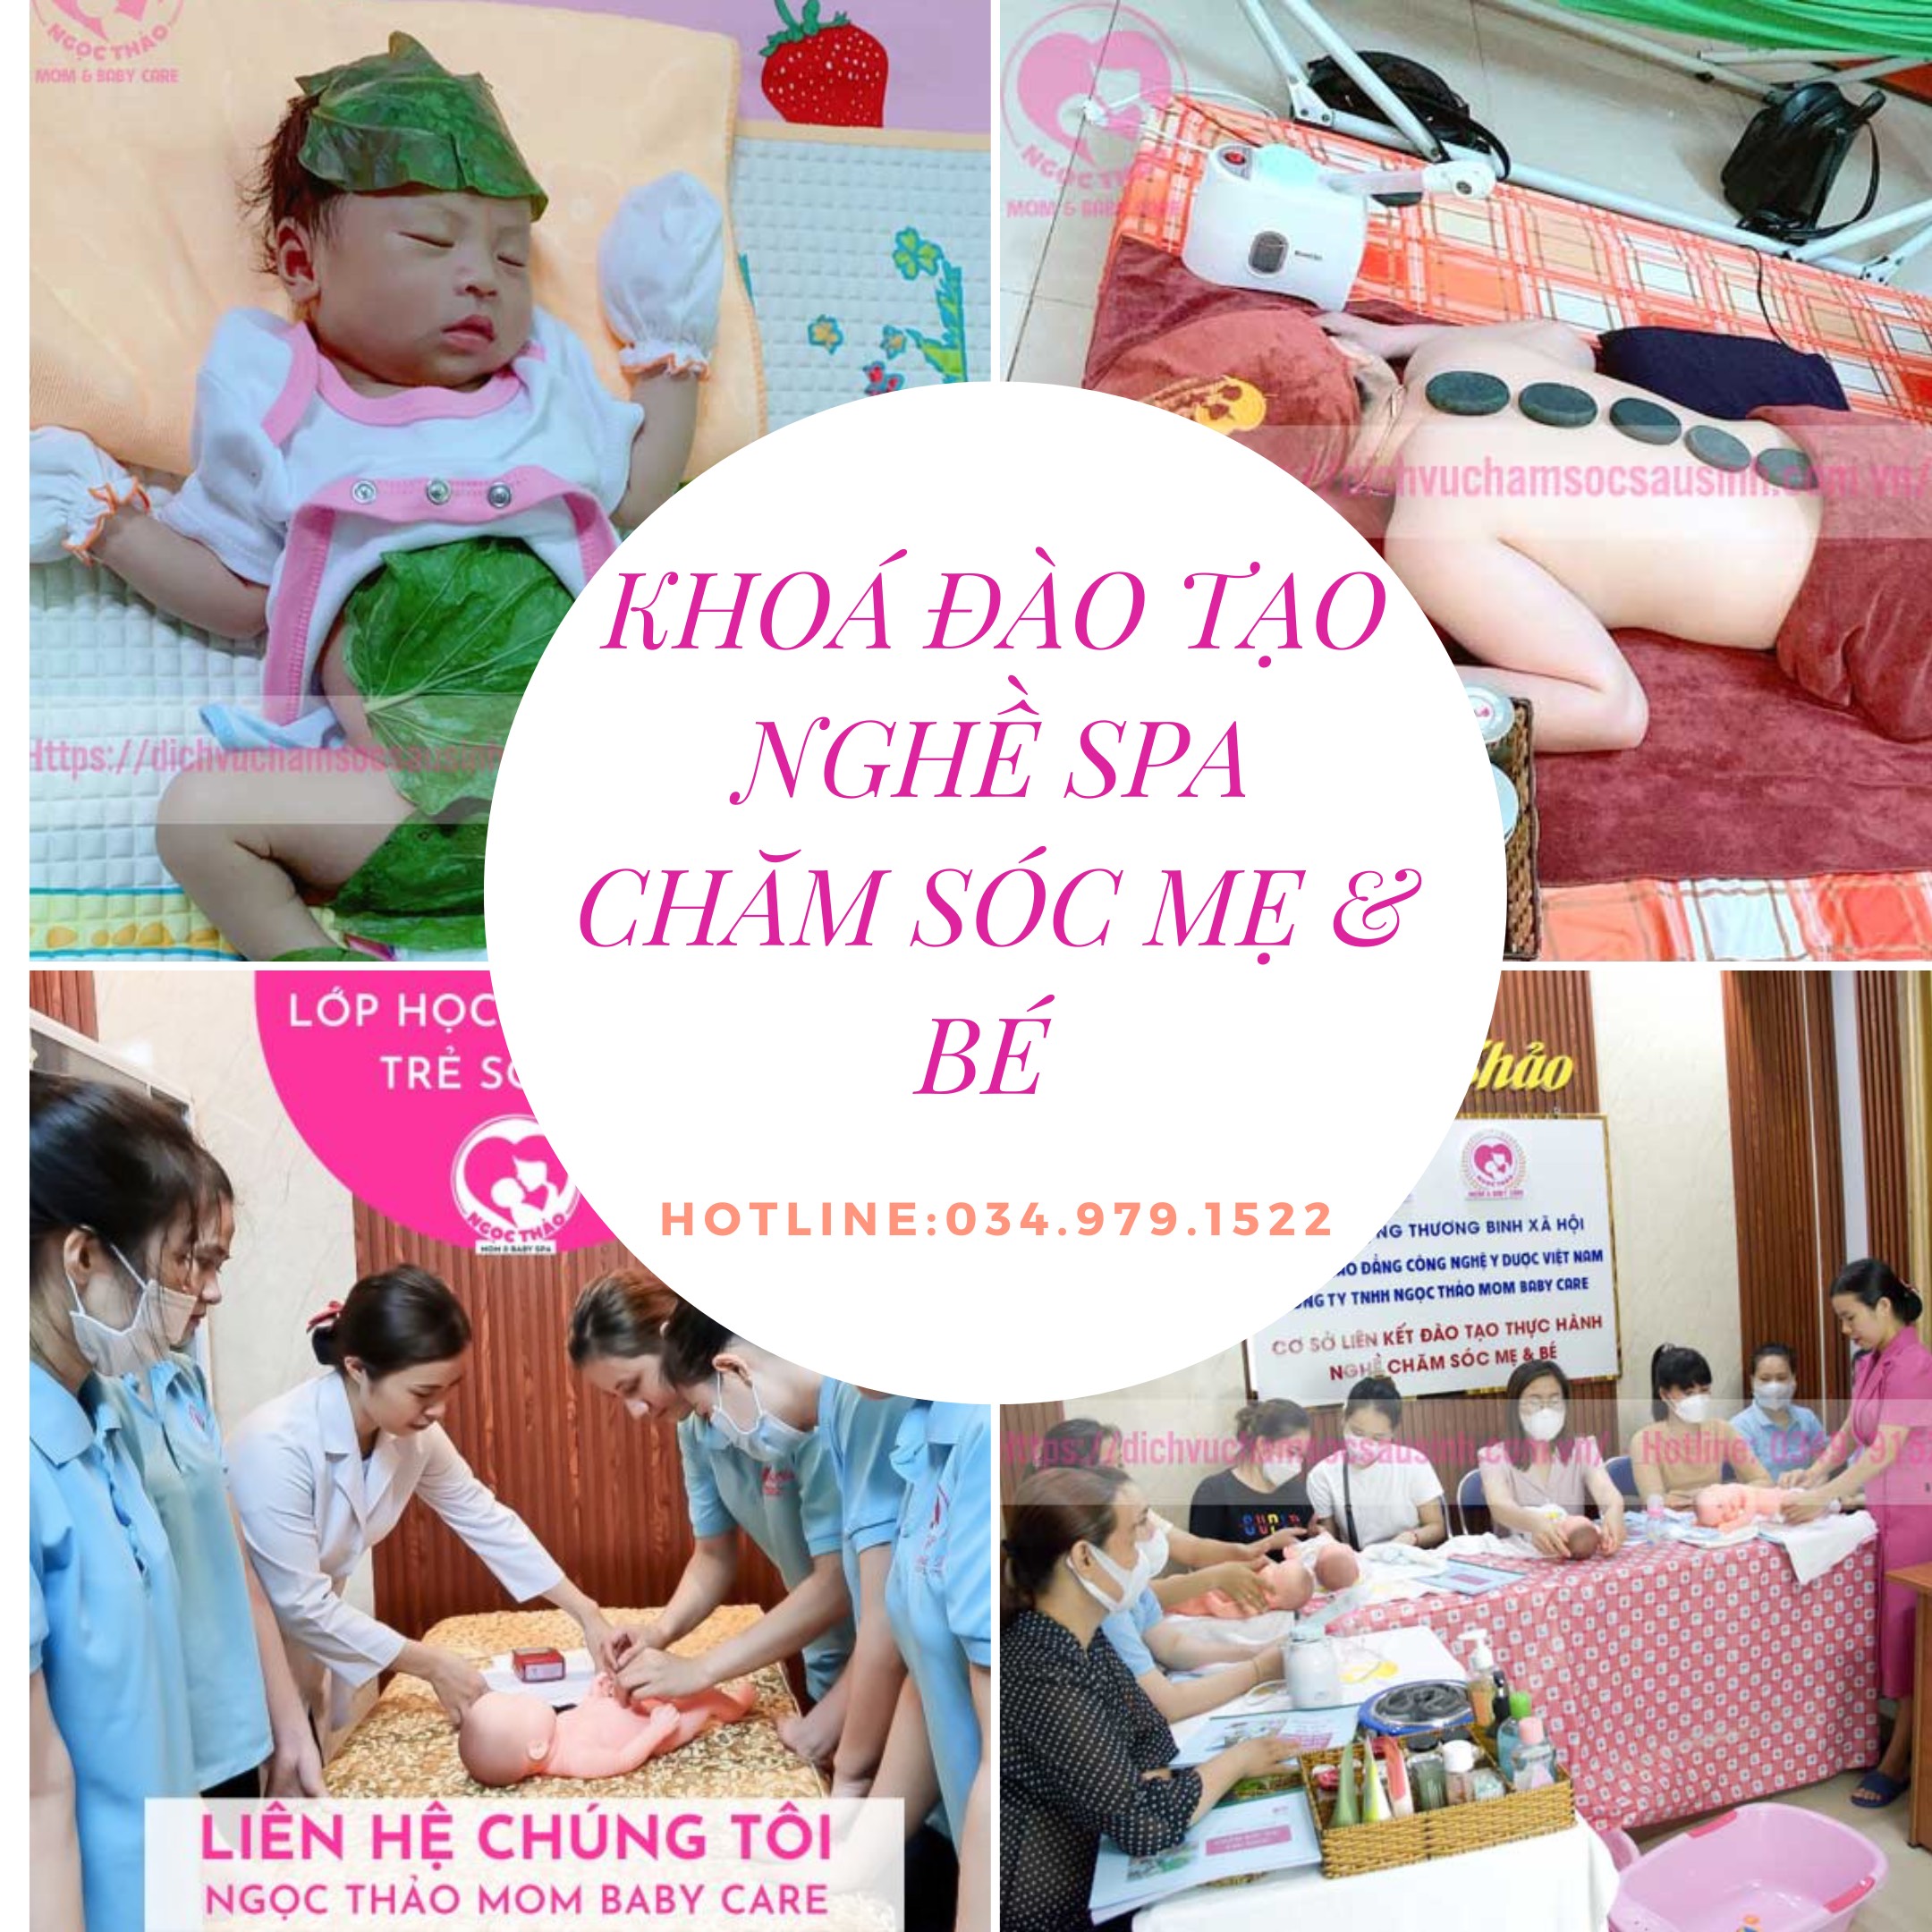 Tuyển sinh khóa học nghề Spa chăm sóc mẹ và bé tại TP Hồ Chí Minh